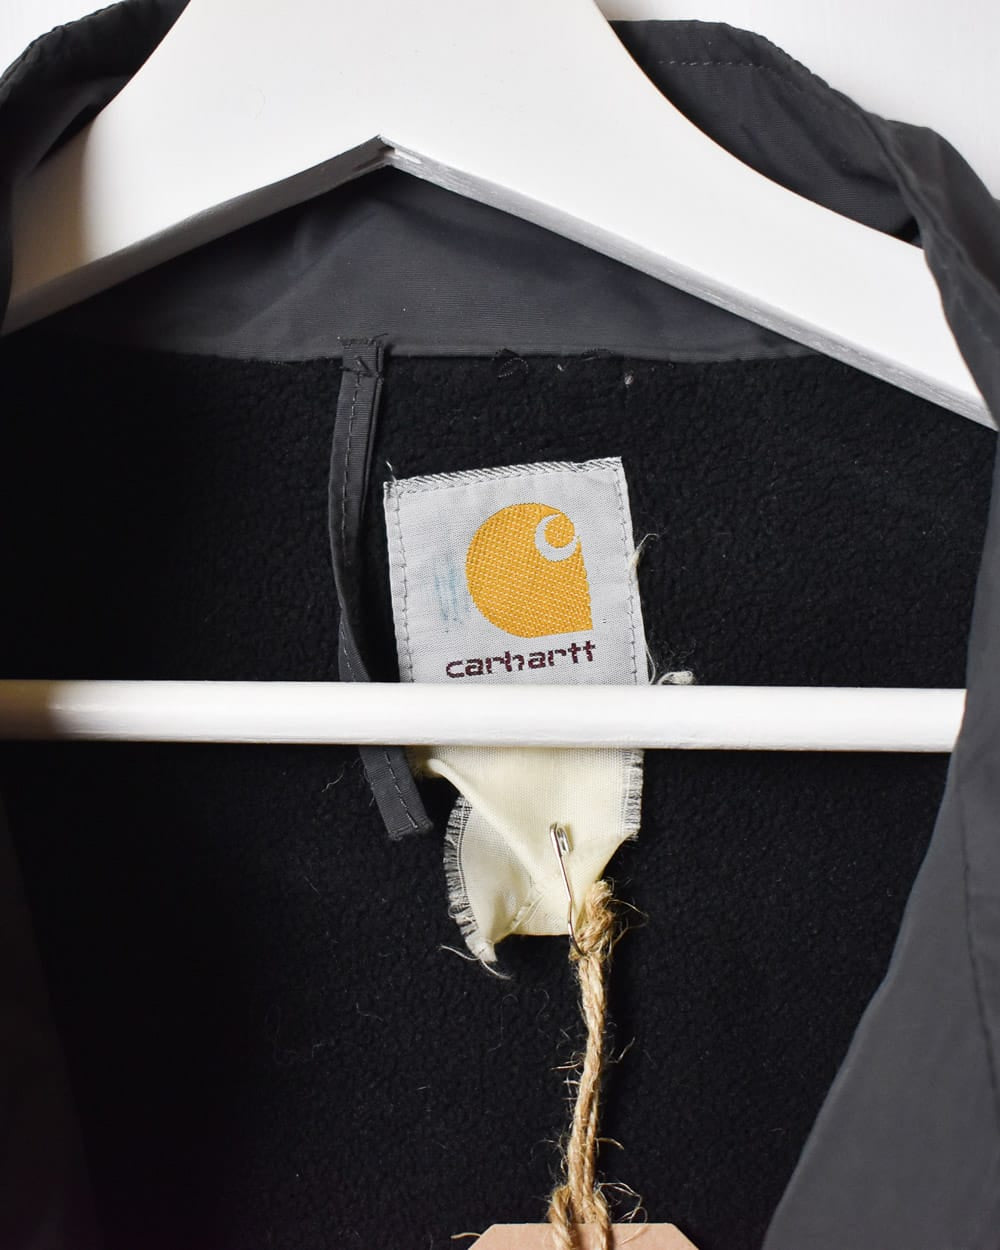 Grey Carhartt Fleece Lined Jacket - Medium